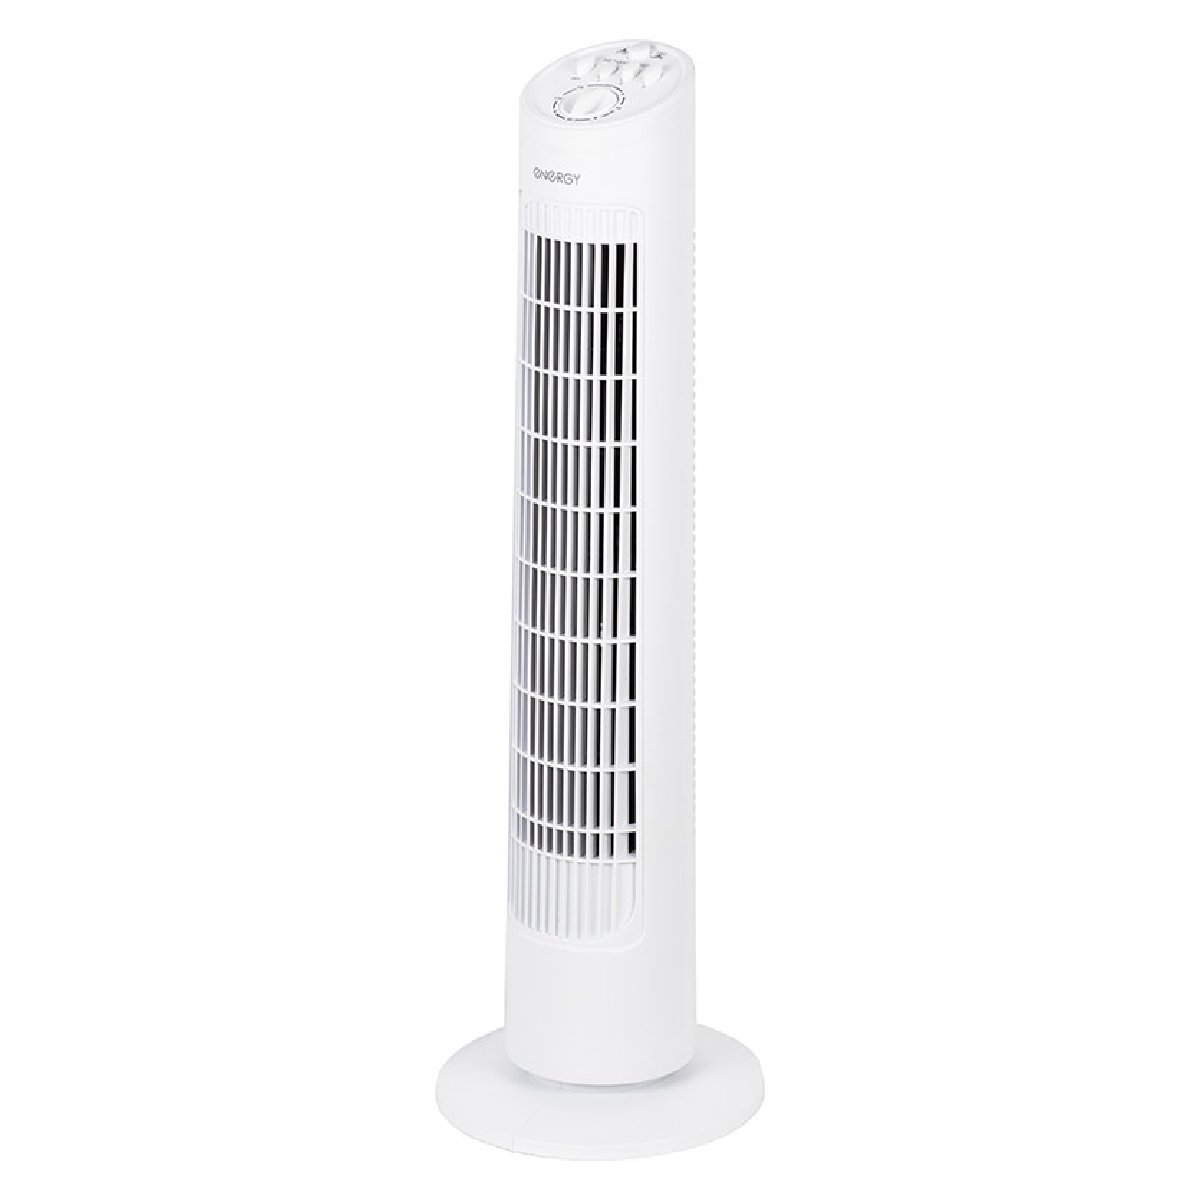 Вентилятор Energy EN-1622 TOWER (напольный, колонна) белый 1шт коробка (100114)Купить